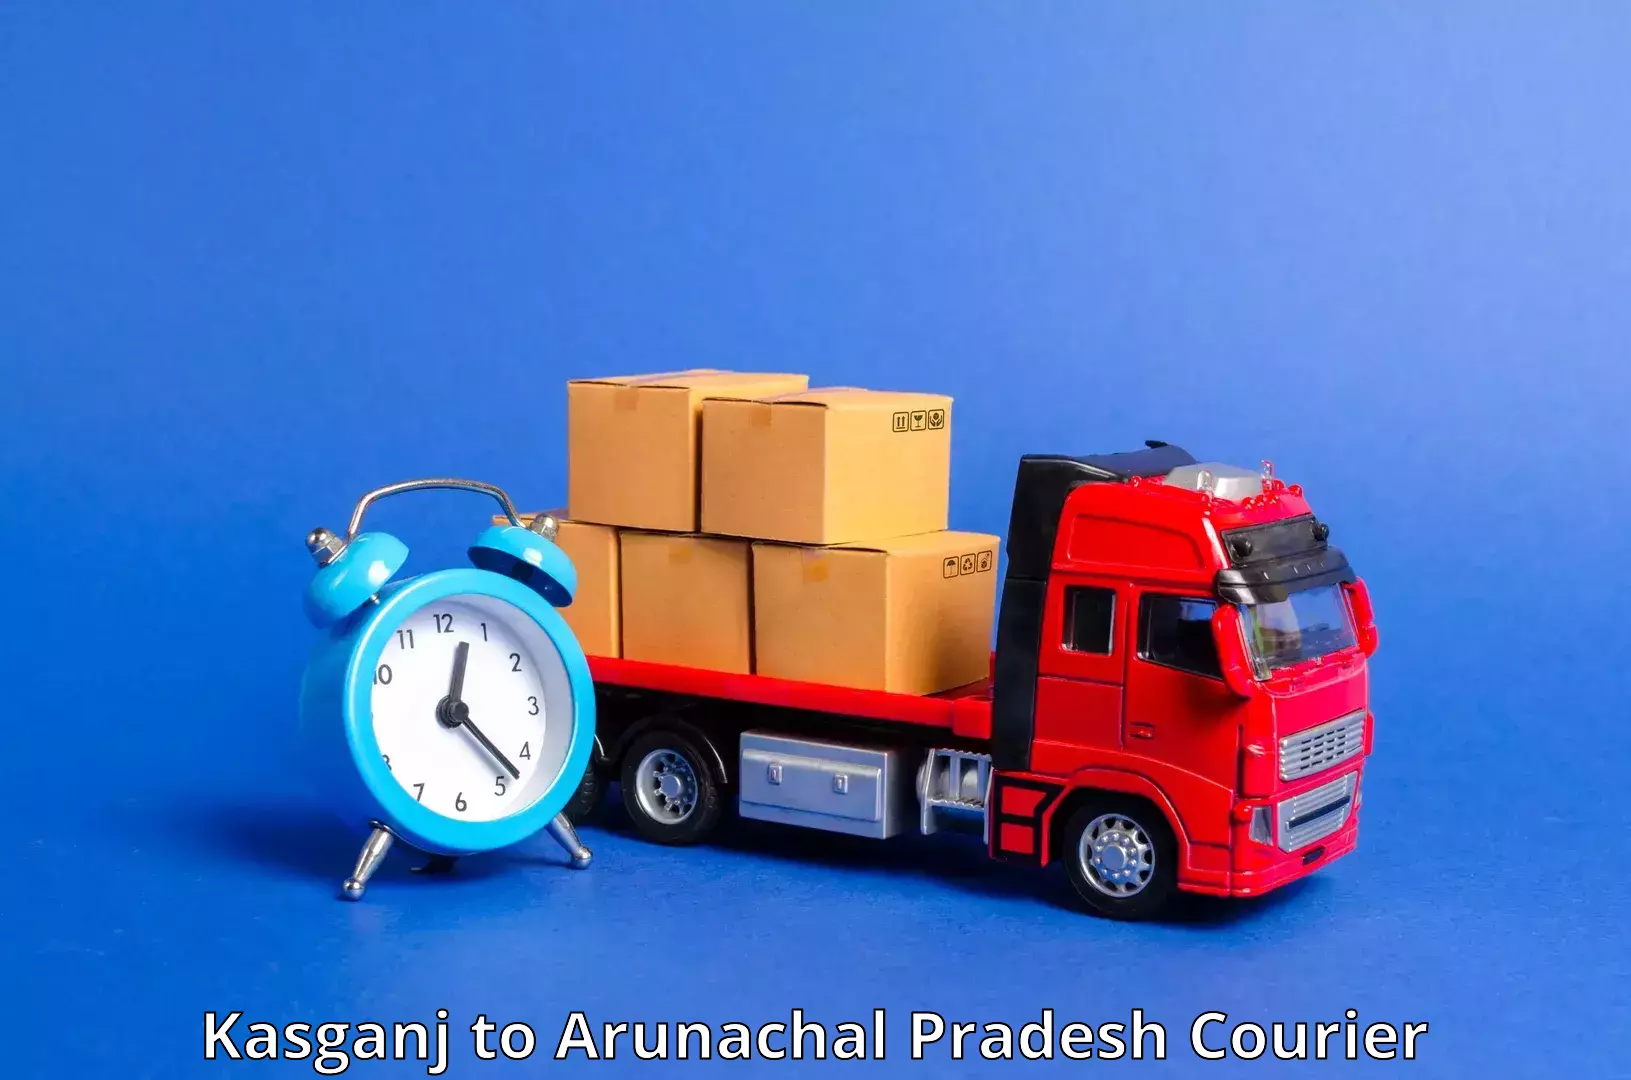 Nationwide courier service Kasganj to Arunachal Pradesh